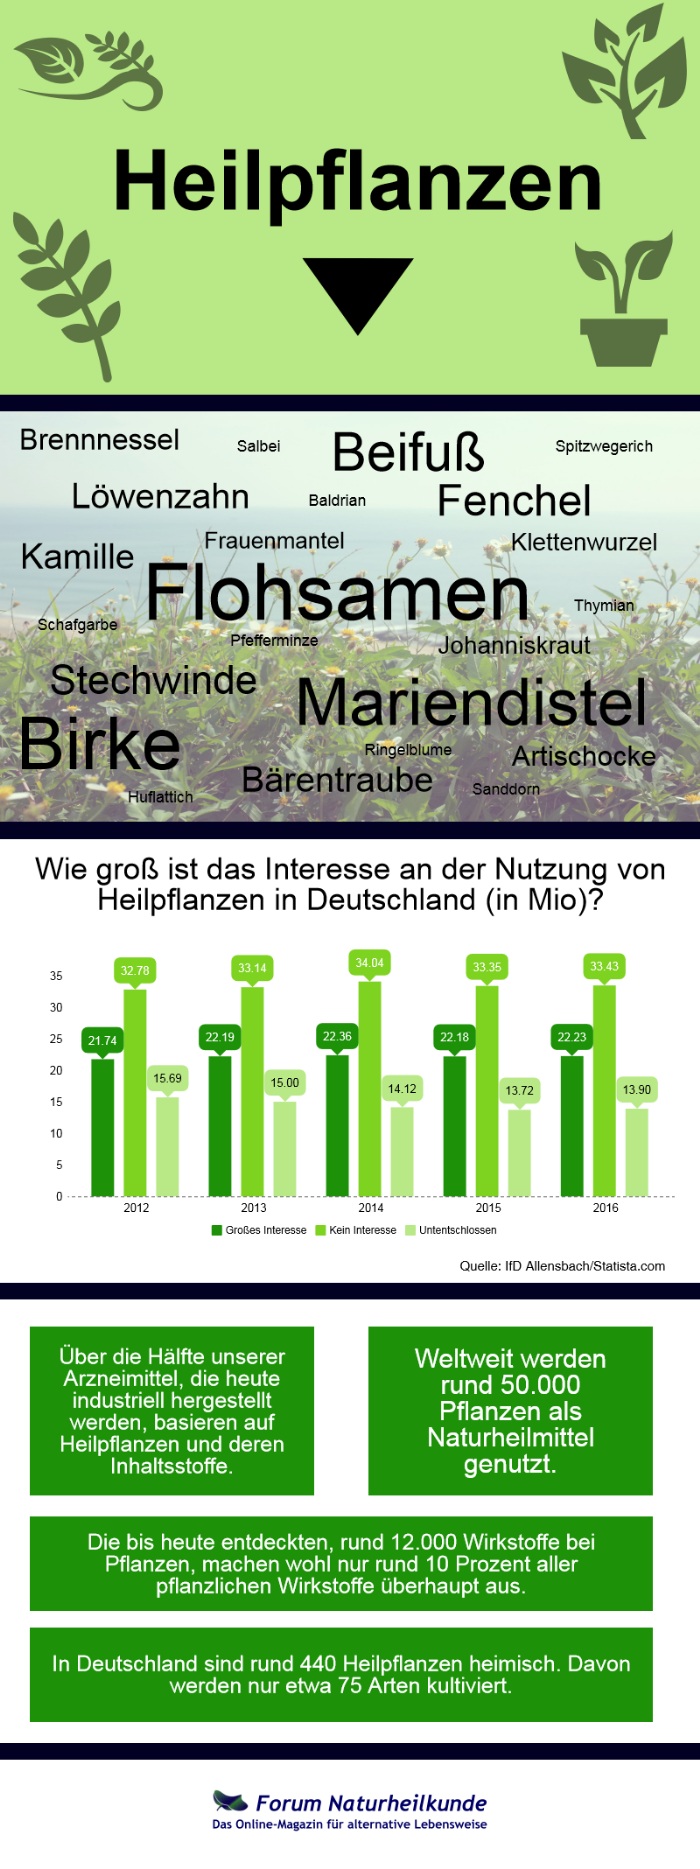 Heilpflanzen und deren Nutzung in Deutschland, Daten und Fakten